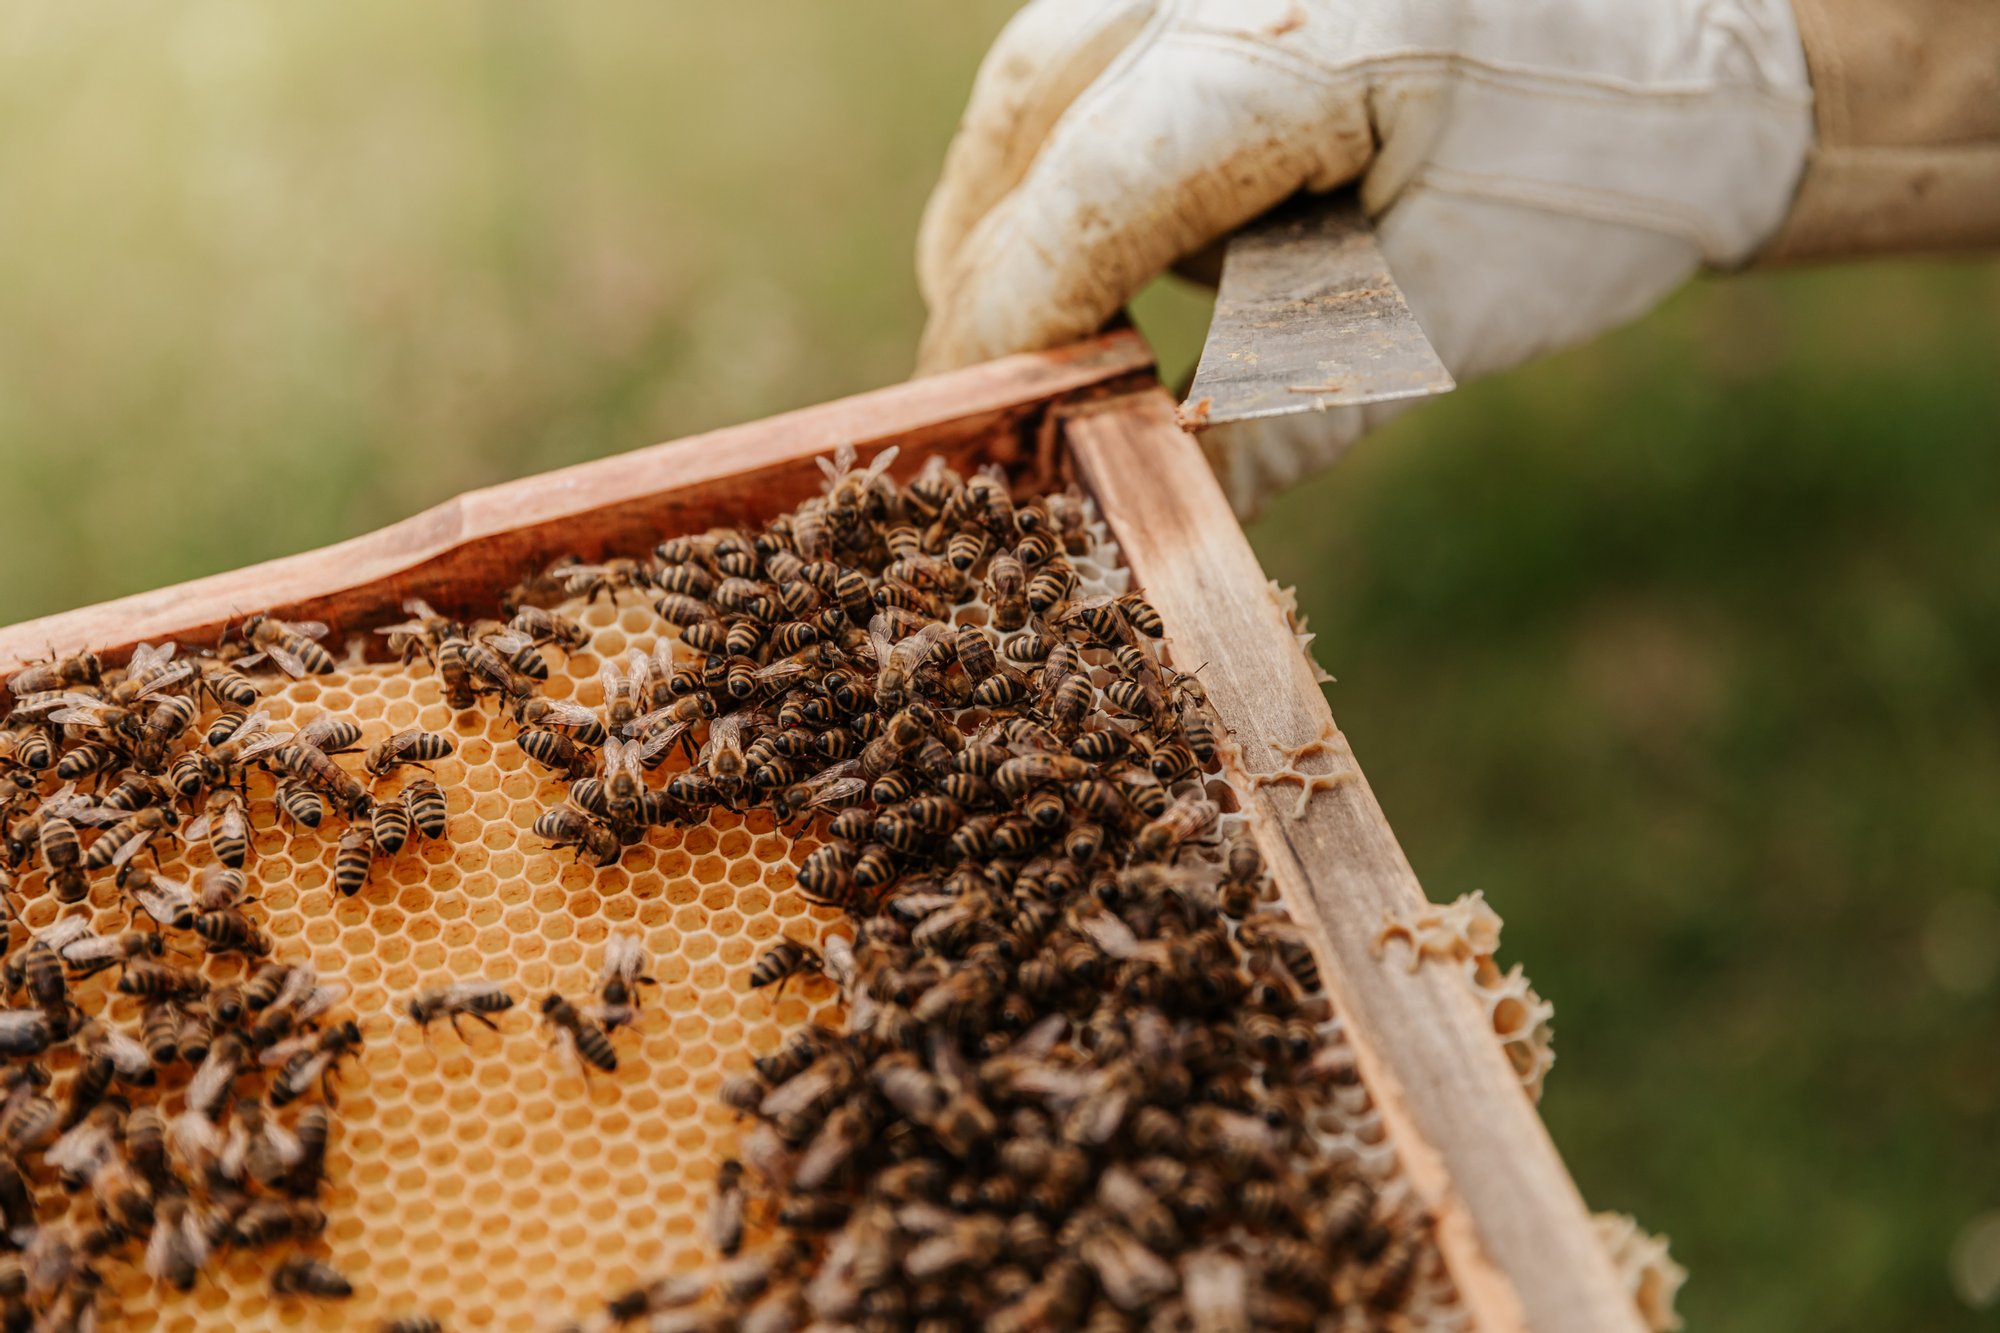 Pszczoły licznie siedzące na ramce z miodem. W górej części zdjęcia widoczna ręka pszczelarza w białej rękawicy.